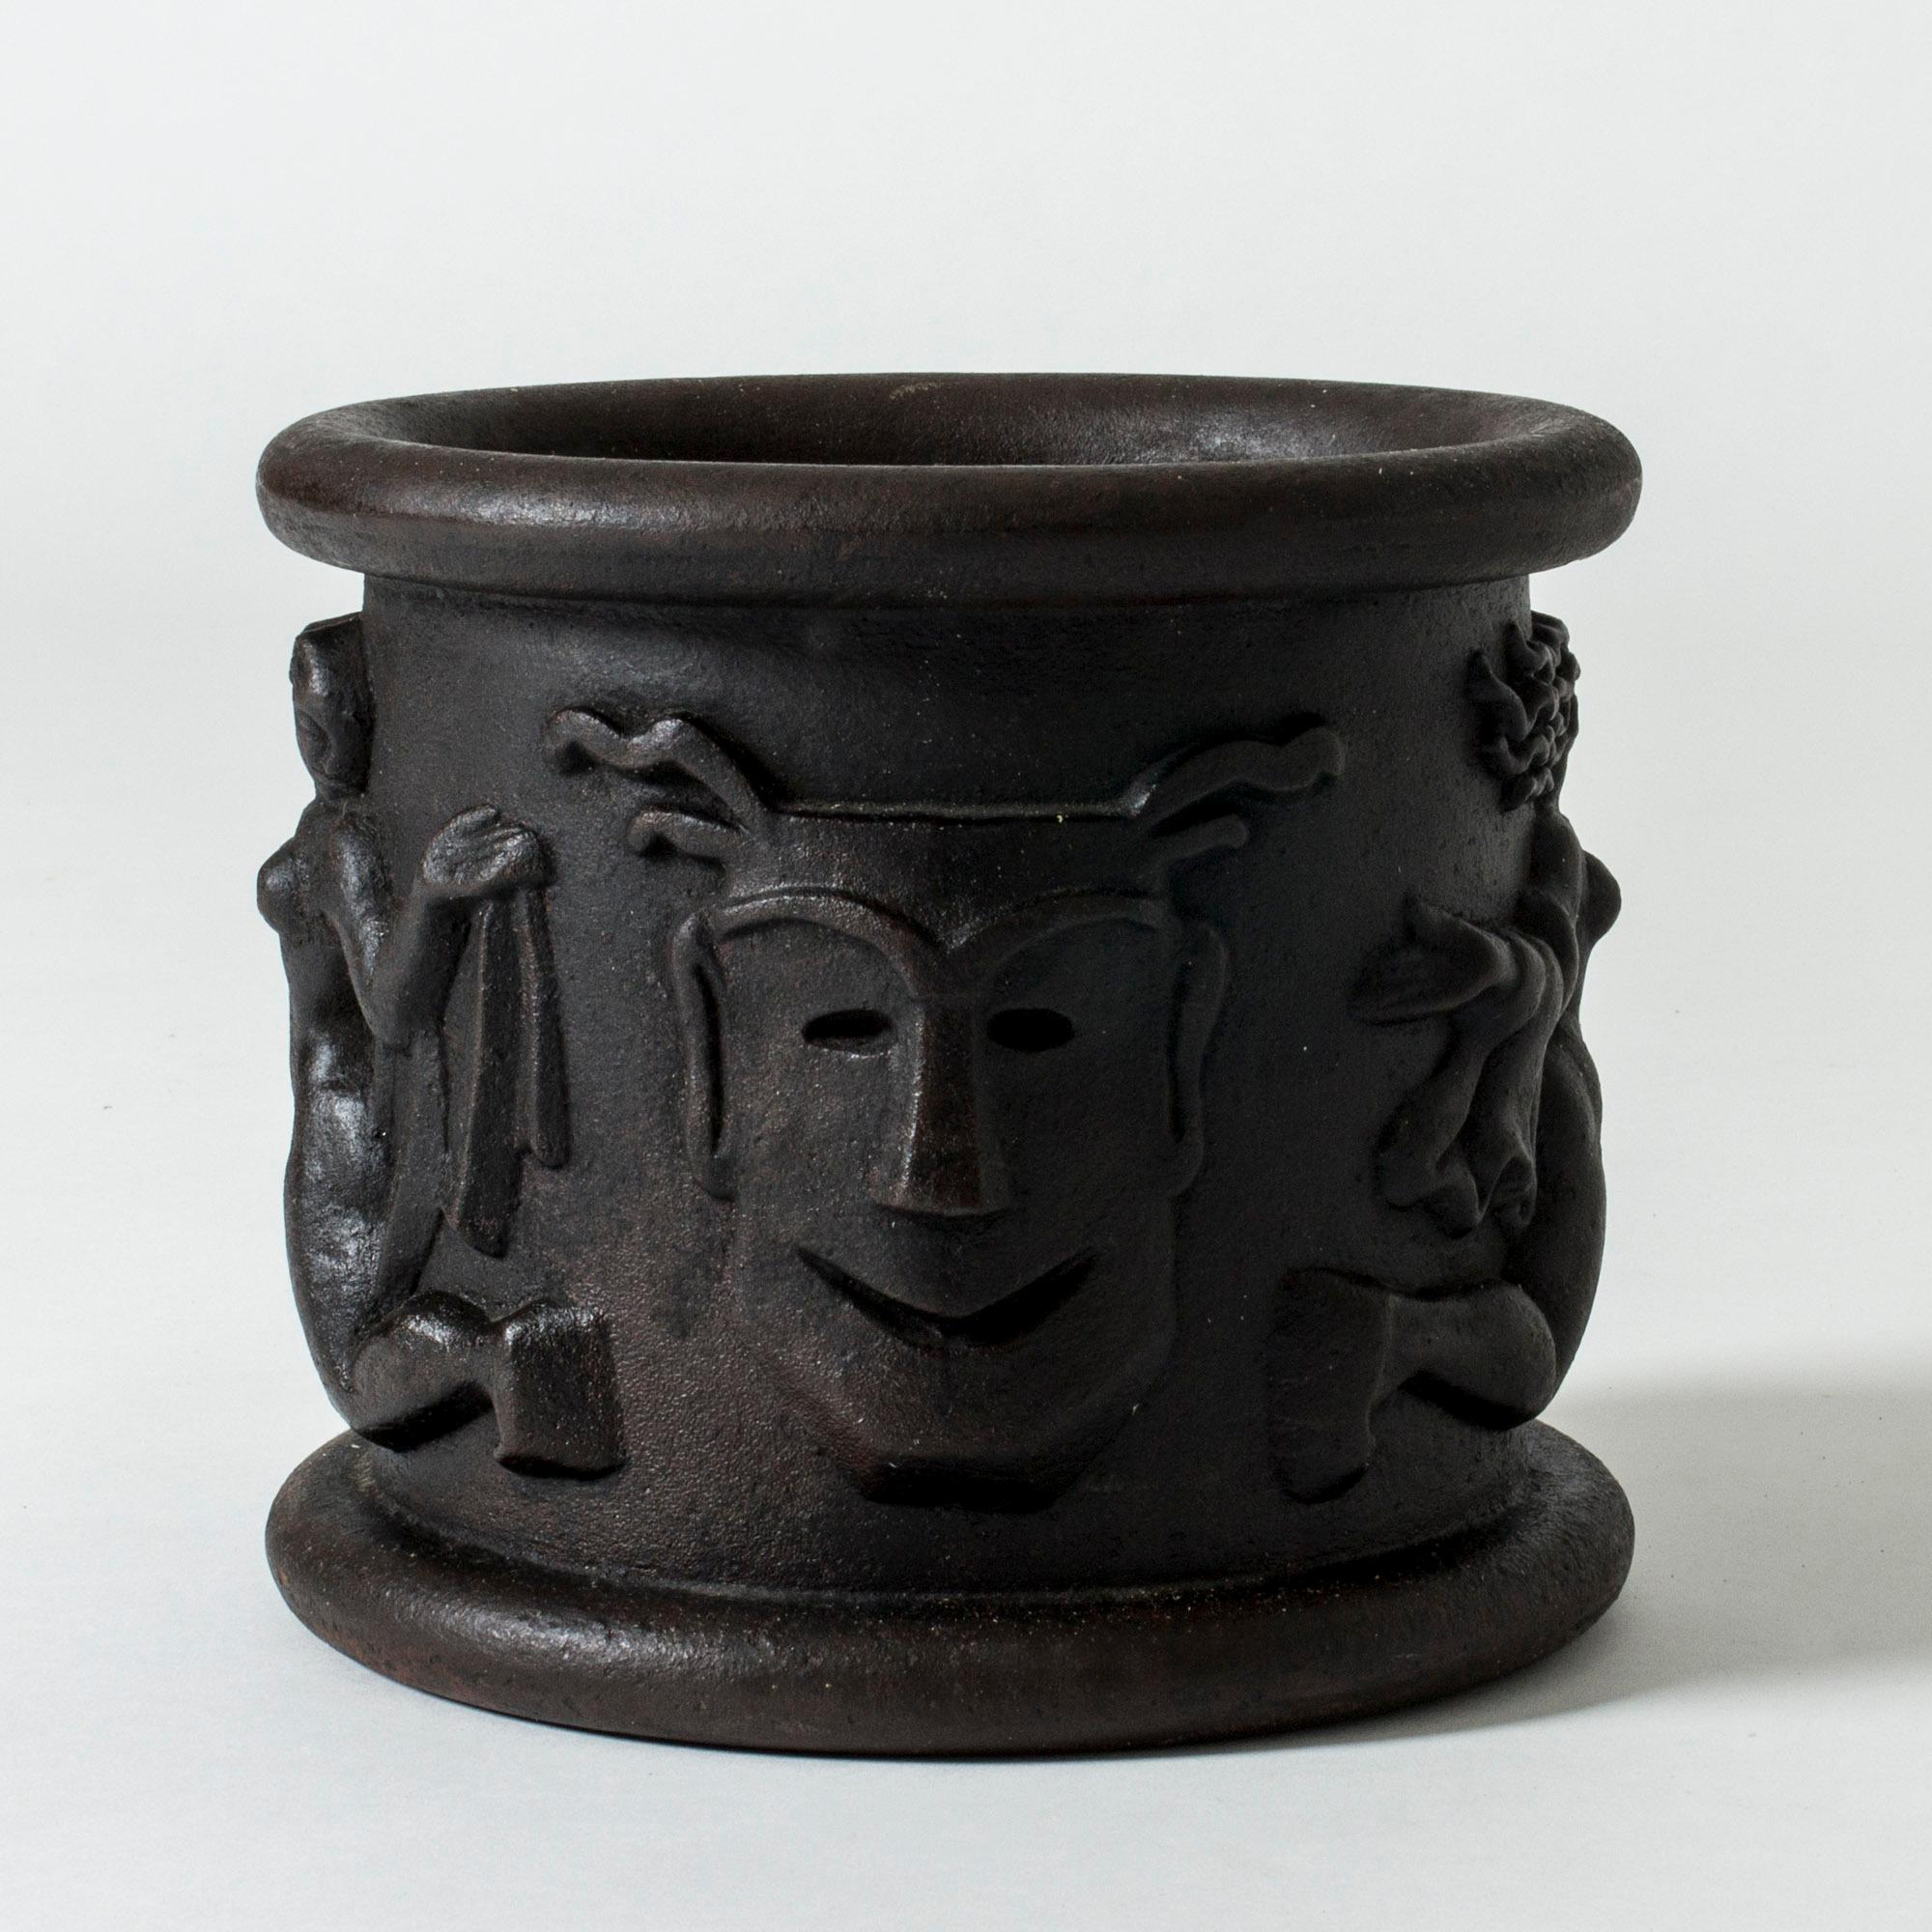 Scandinavian Modern Cast Iron Flower Pot Model #1 by Anna Petrus for Näfveqvarns Bruk, Sweden, 1920s